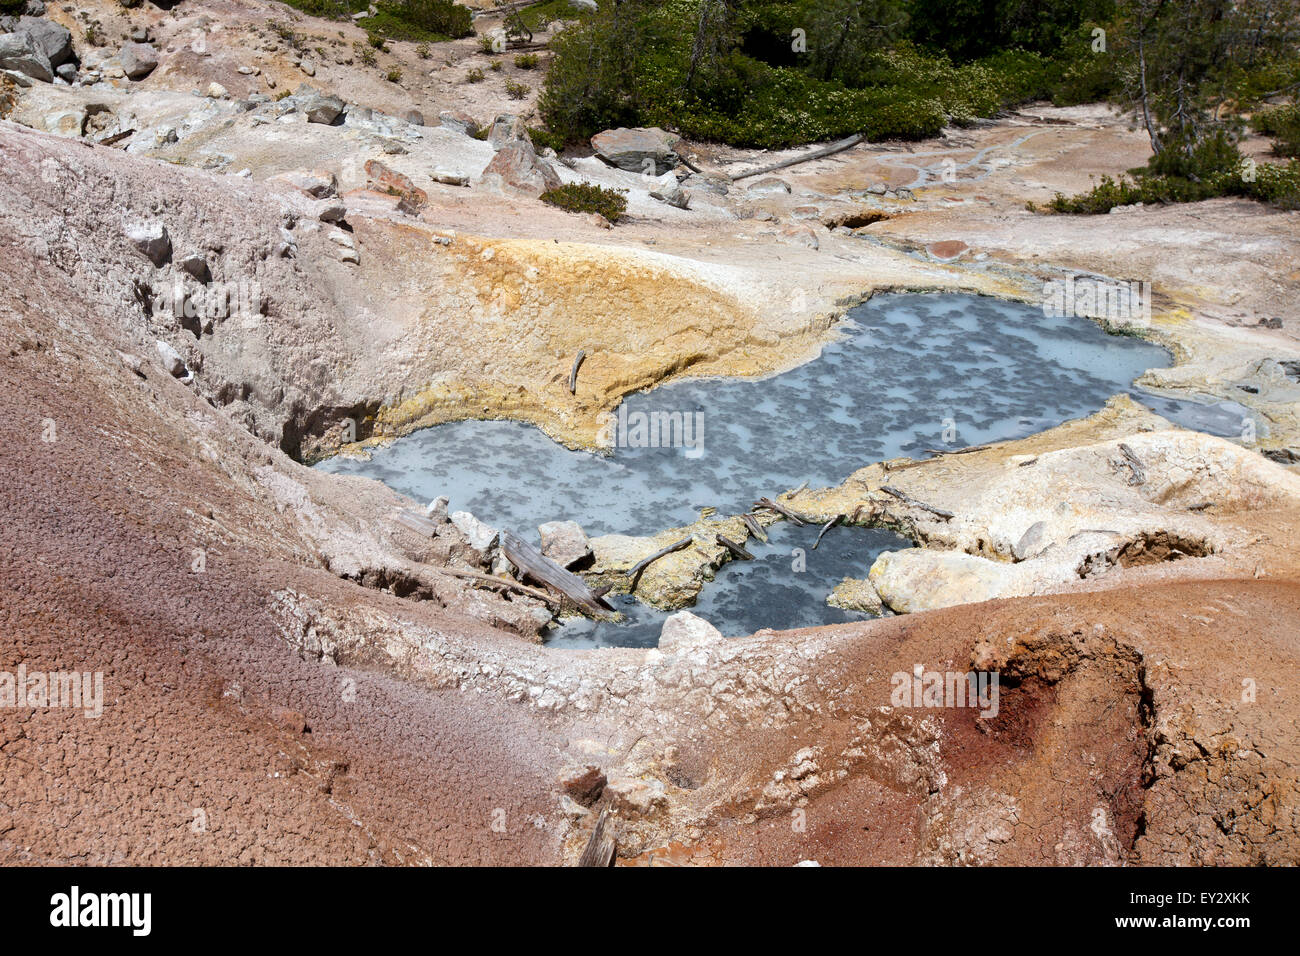 L'eau bouillante à Cuisine Devils, Lassen Volcanic National Park, California, United States of America Banque D'Images